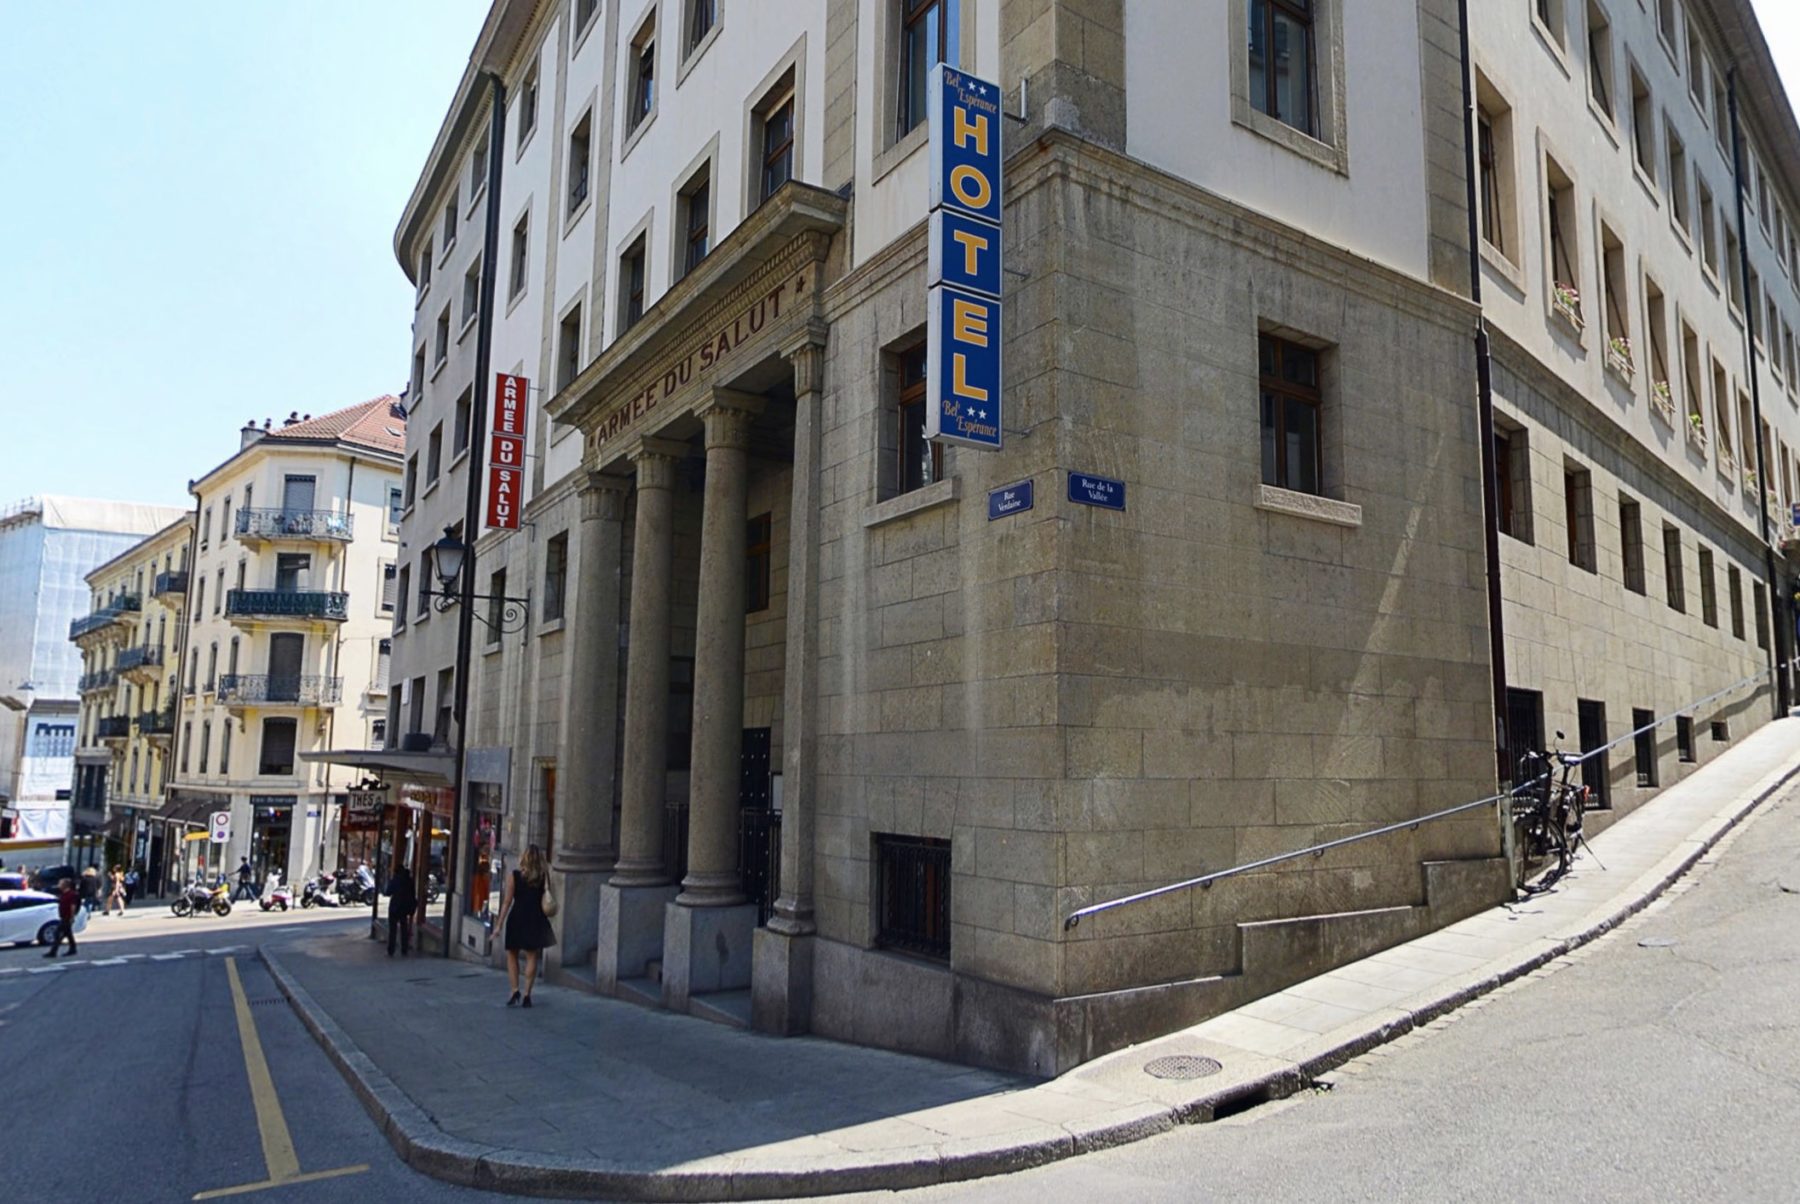 L'hôtel Bel'Espérance à Genève vu de l'extérieur. Sur la façade en pierres, les inscriptions "Armée du Salut" et "hôtel"